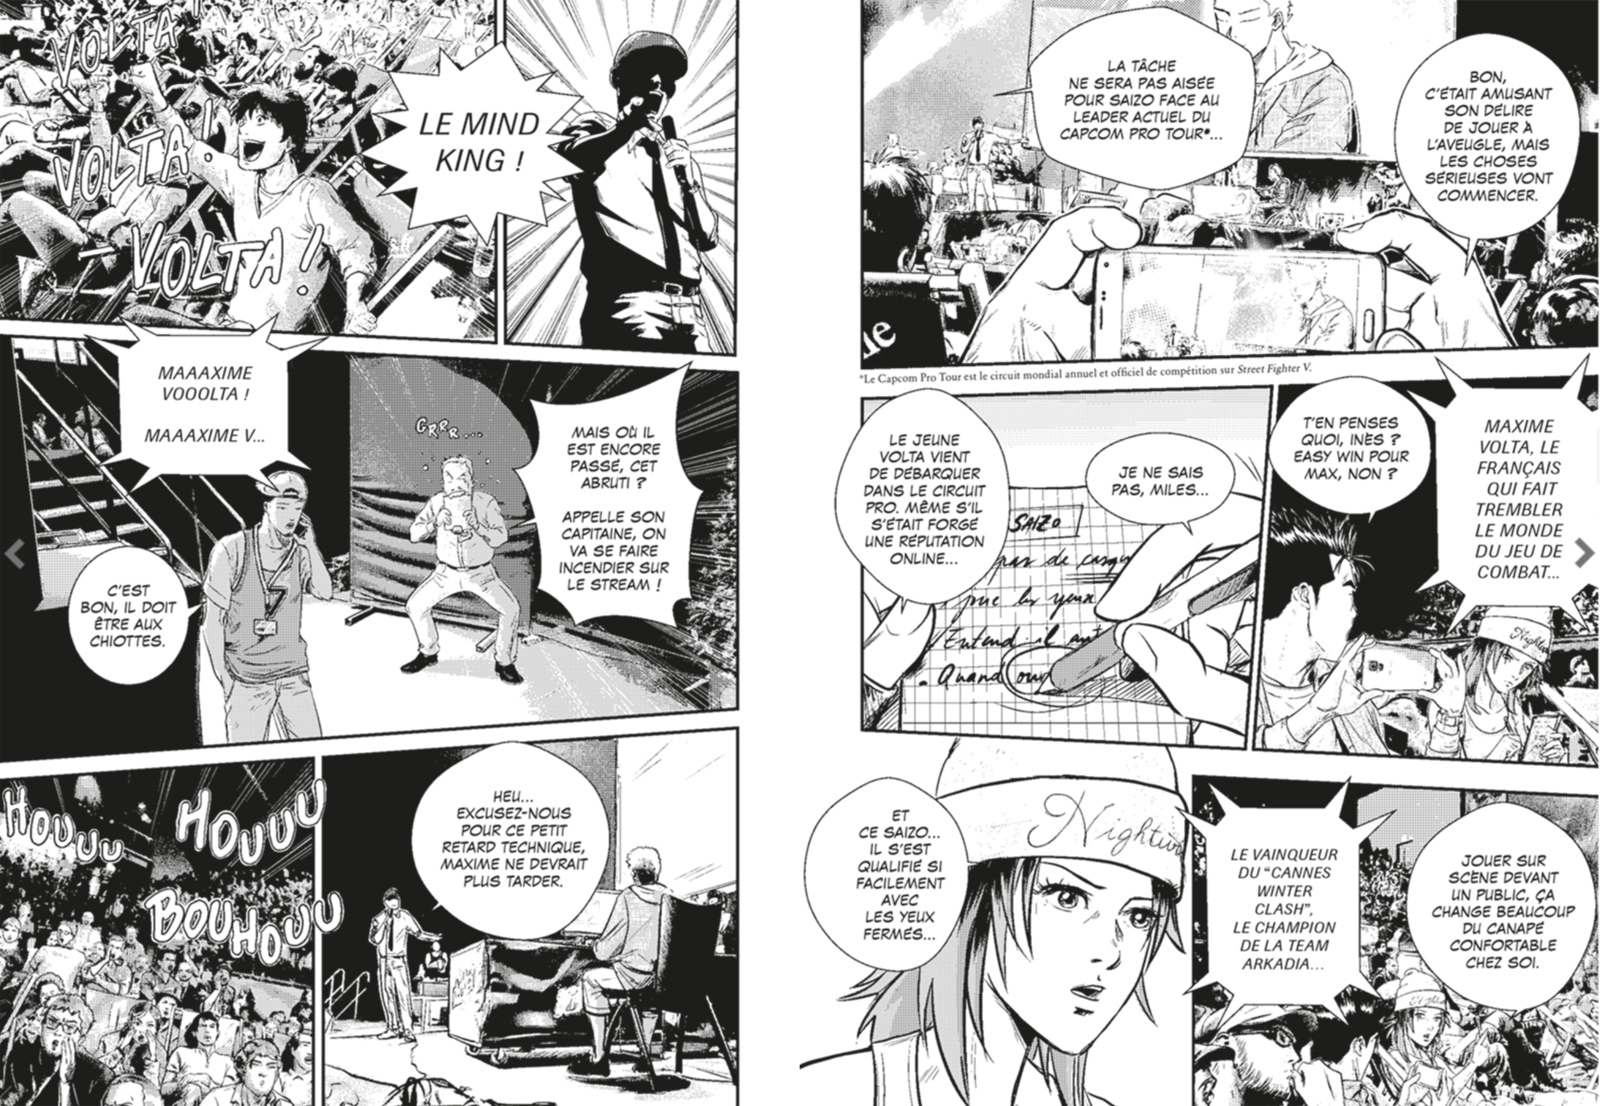 ExtraitS du manga VERSUS FIGHTING STORY publié aux éditions GLENAT MANGA